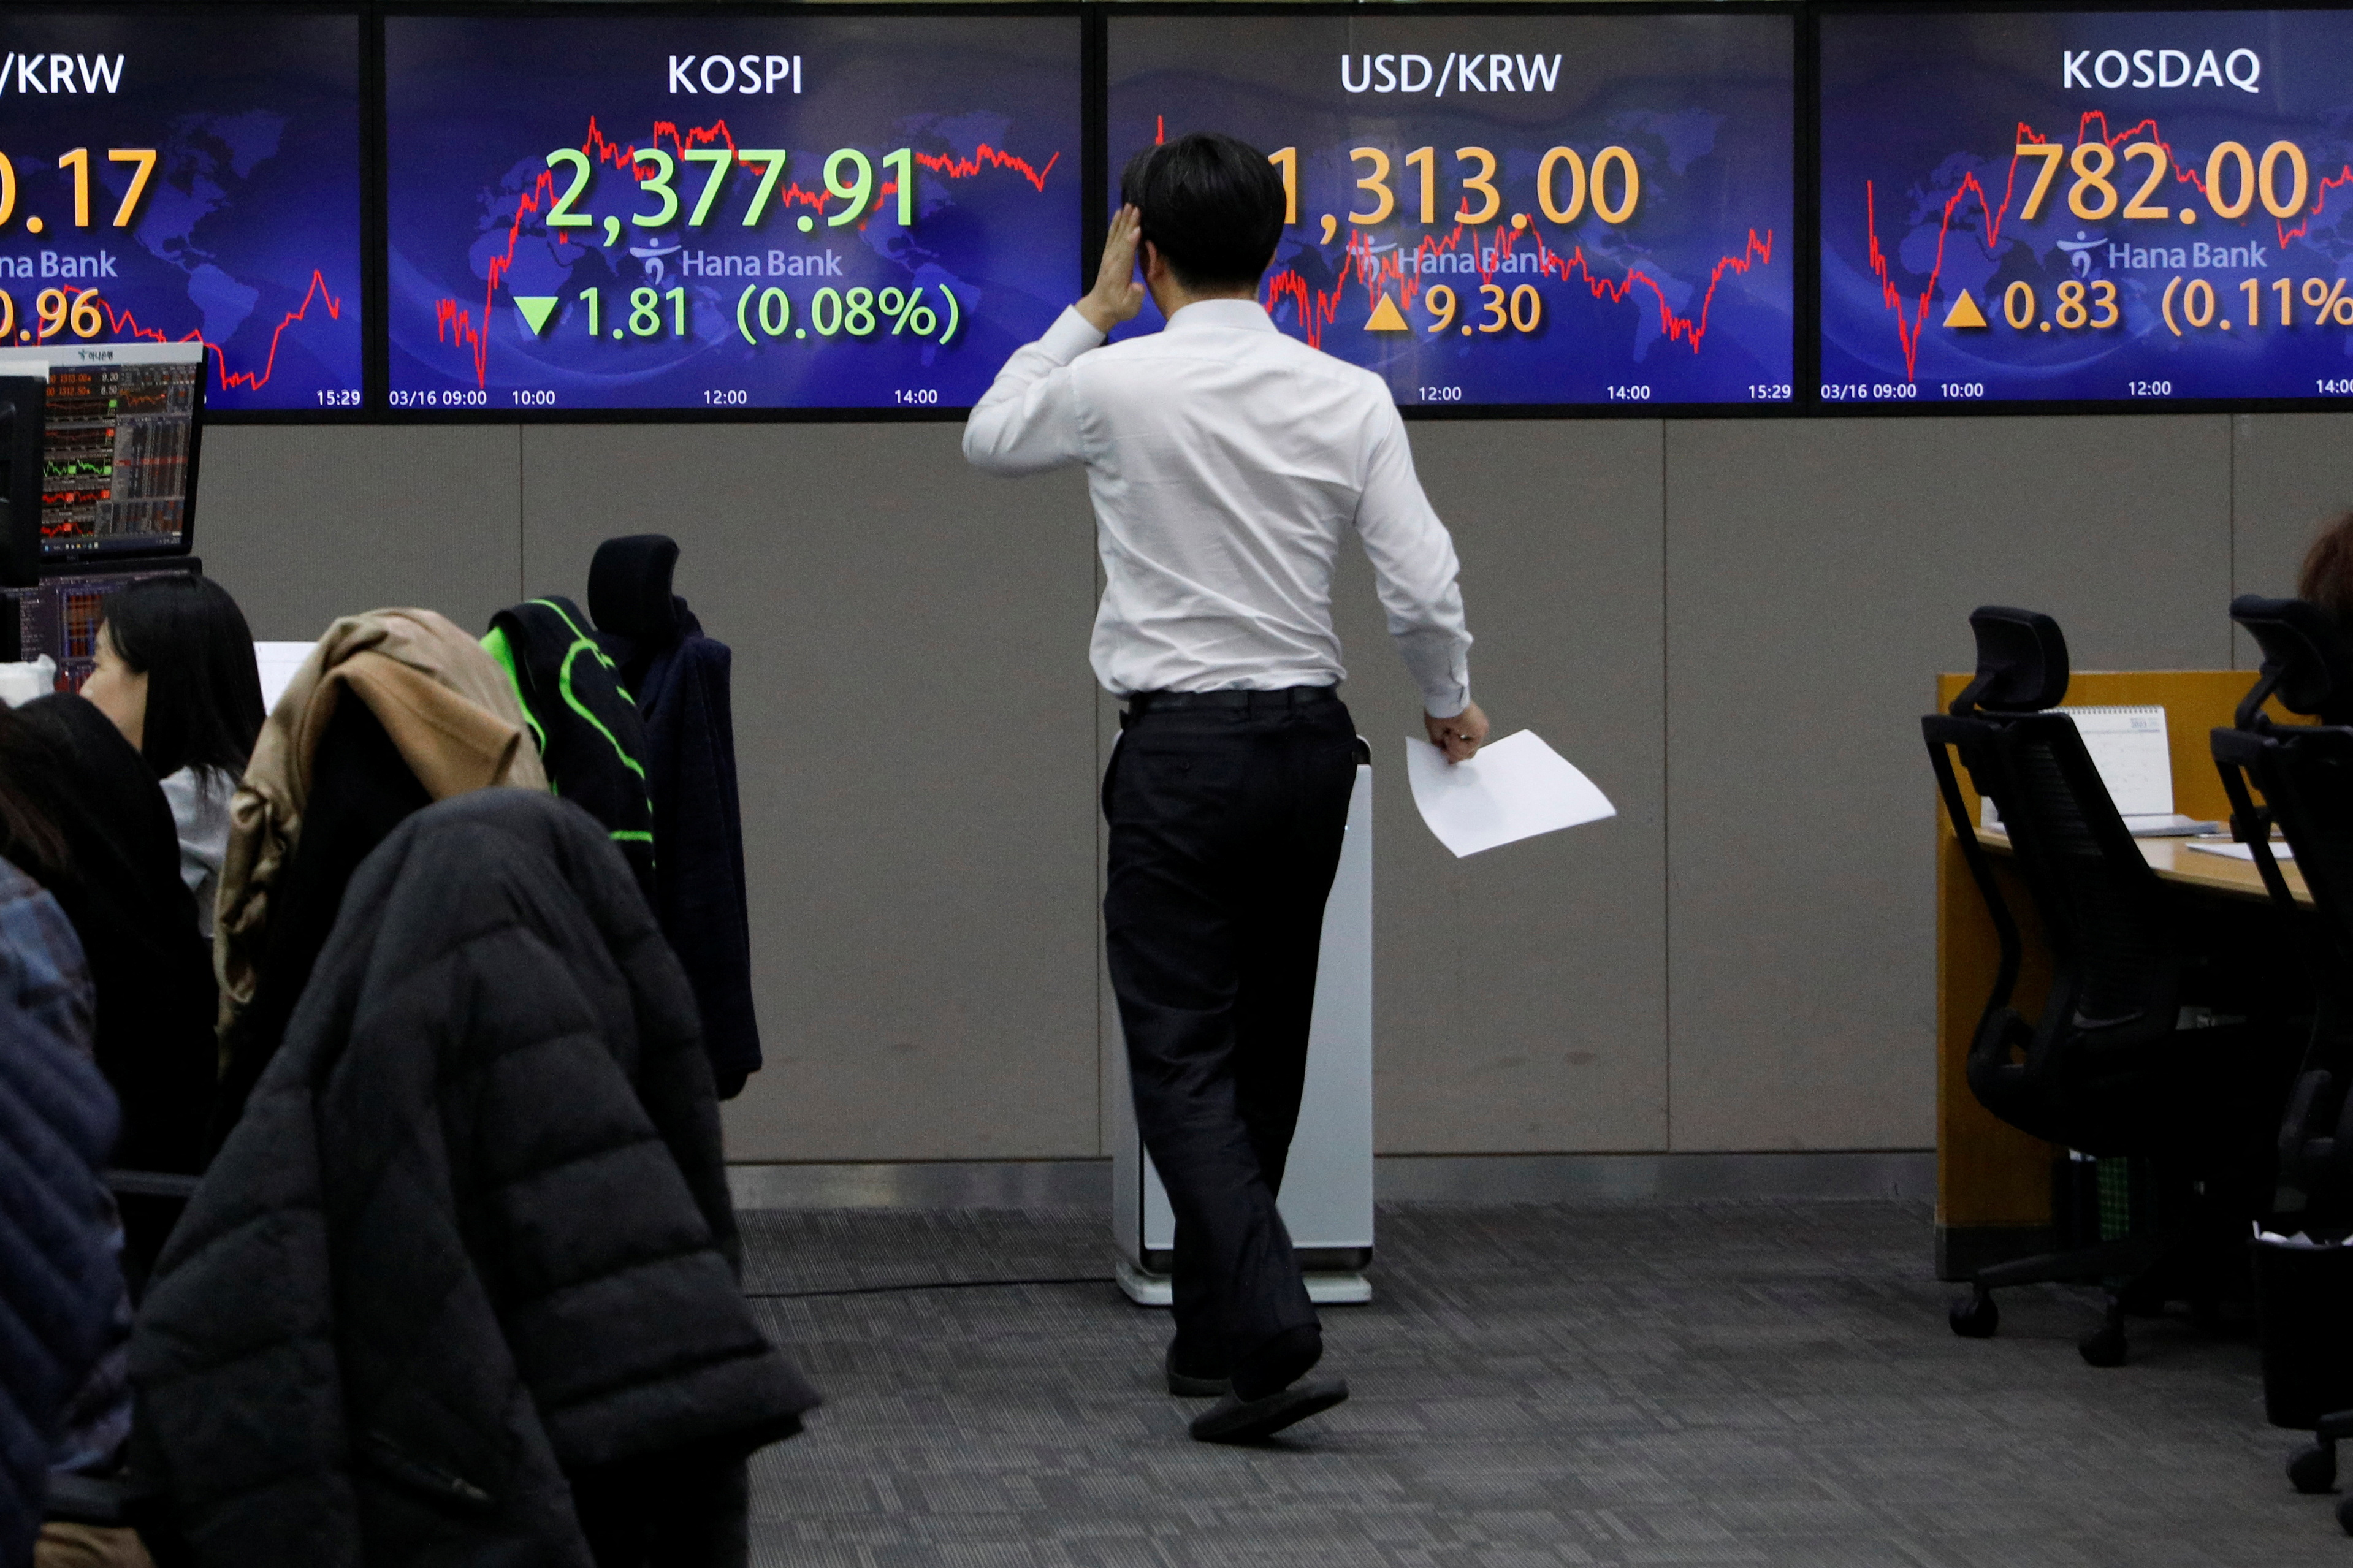 En Corea del Sur, el selectivo Kospi de la Bolsa de Seúl escaló 10,95 puntos. (REUTERS/Kim Soo-hyeon)